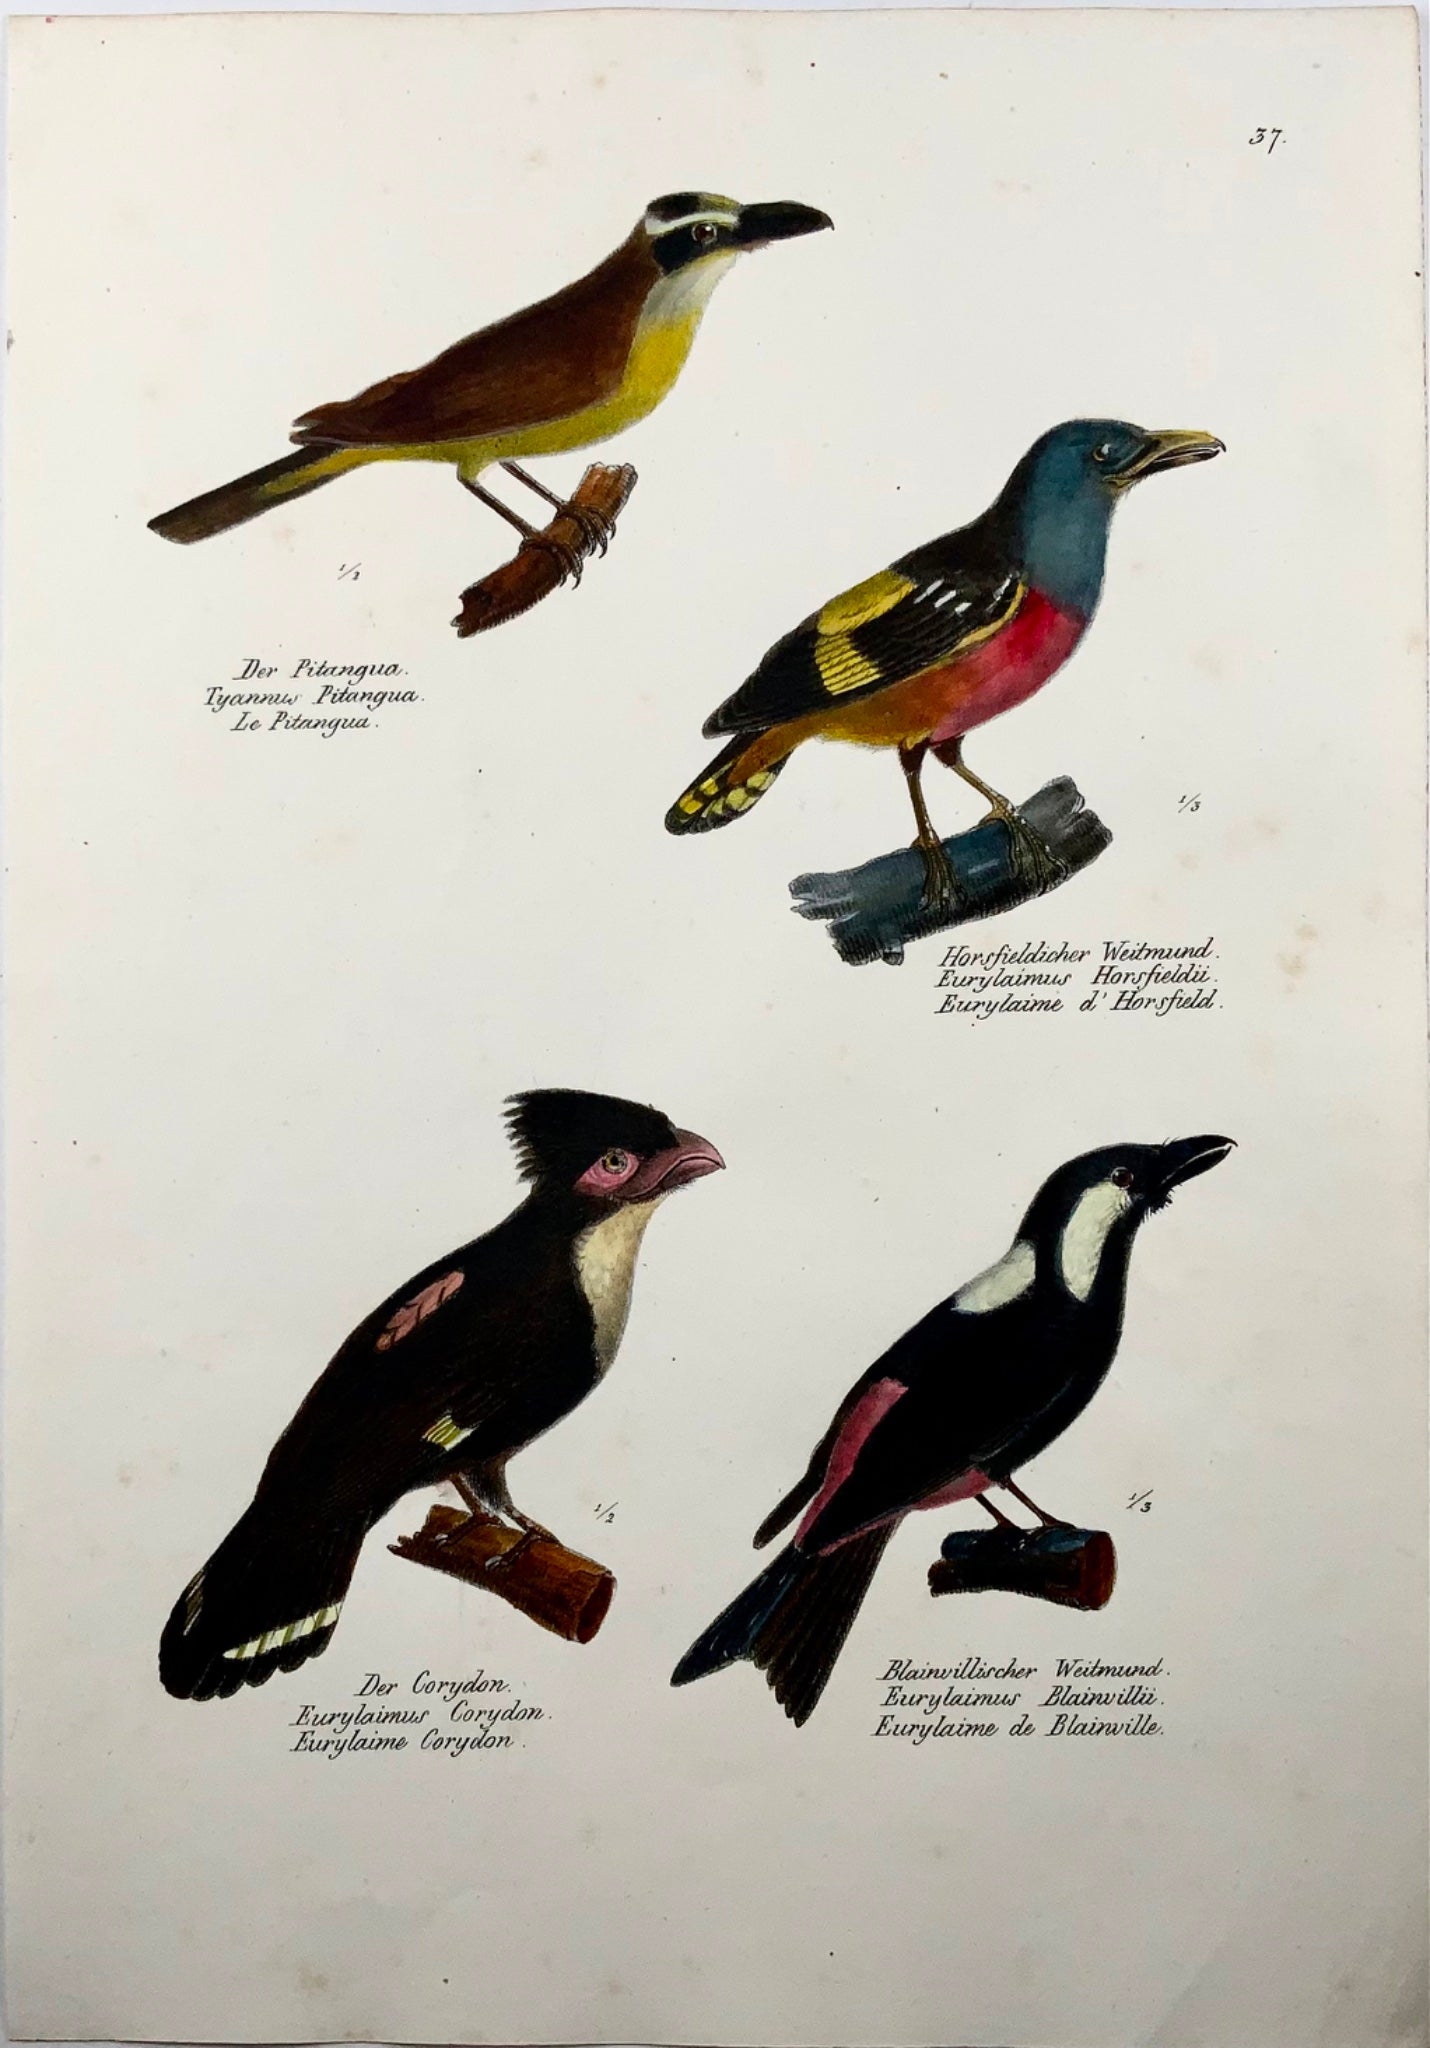 1830 Broadbills, Ornithologie Brodtmann lithographie folio colorée à la main